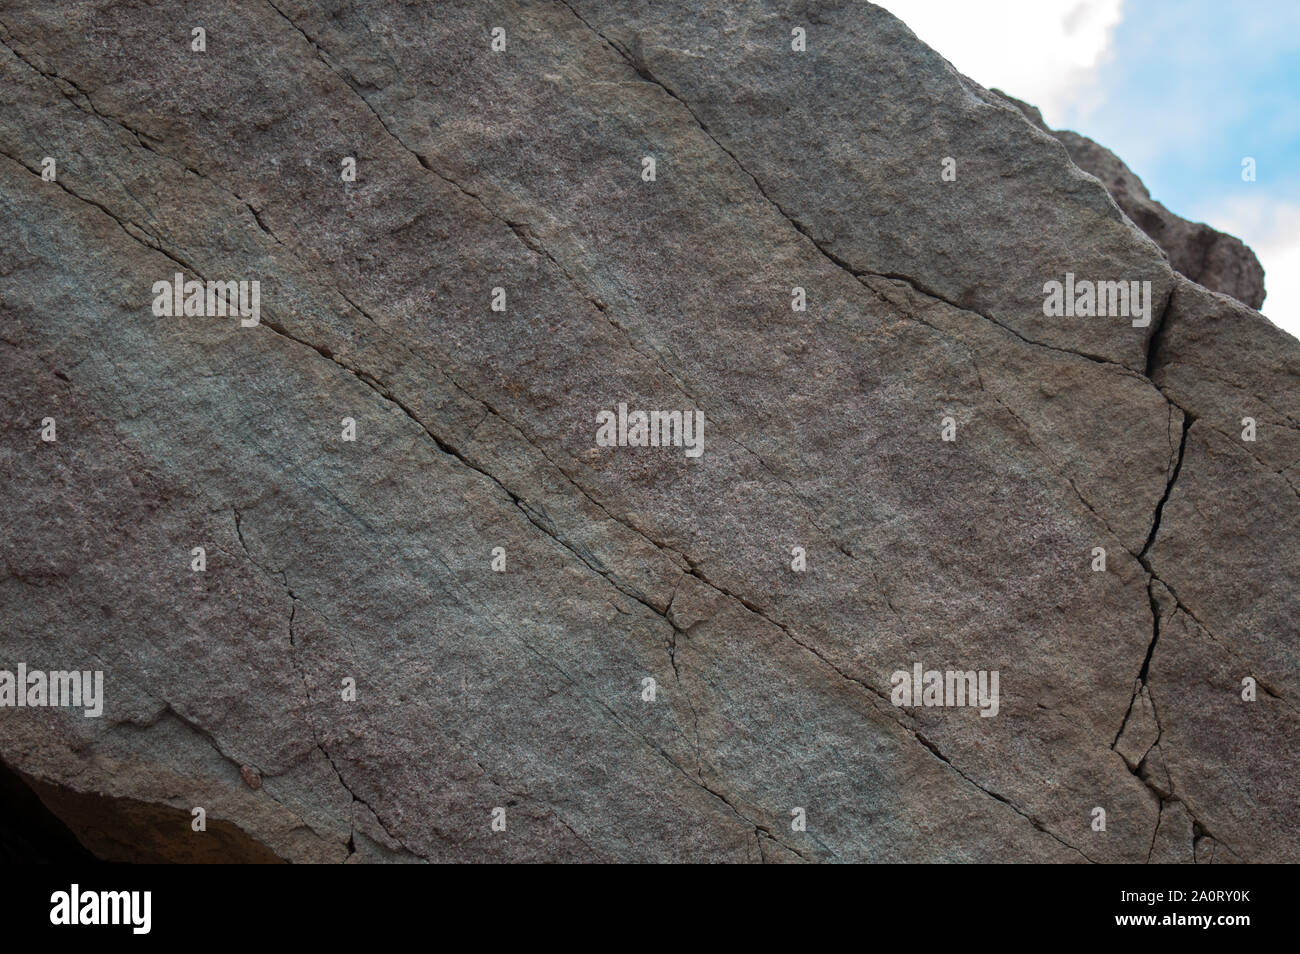 Eine Nahaufnahme eines großen, bunten Colorado Mountain Rock würde eine nette Plakat oder Textur Hintergrund machen. Bokeh. Stockfoto